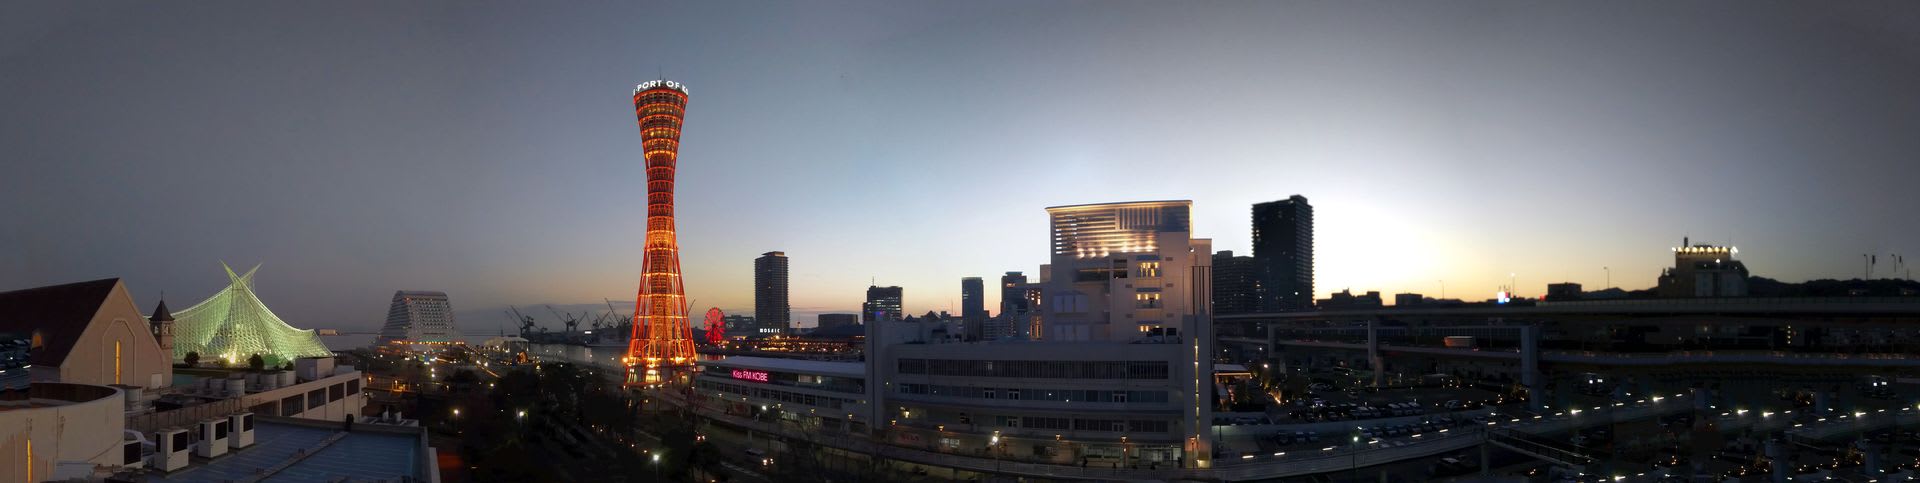 神戸 夜景 100万ドル ホテルオークラ神戸からの夜景 おーい ふくちゃん